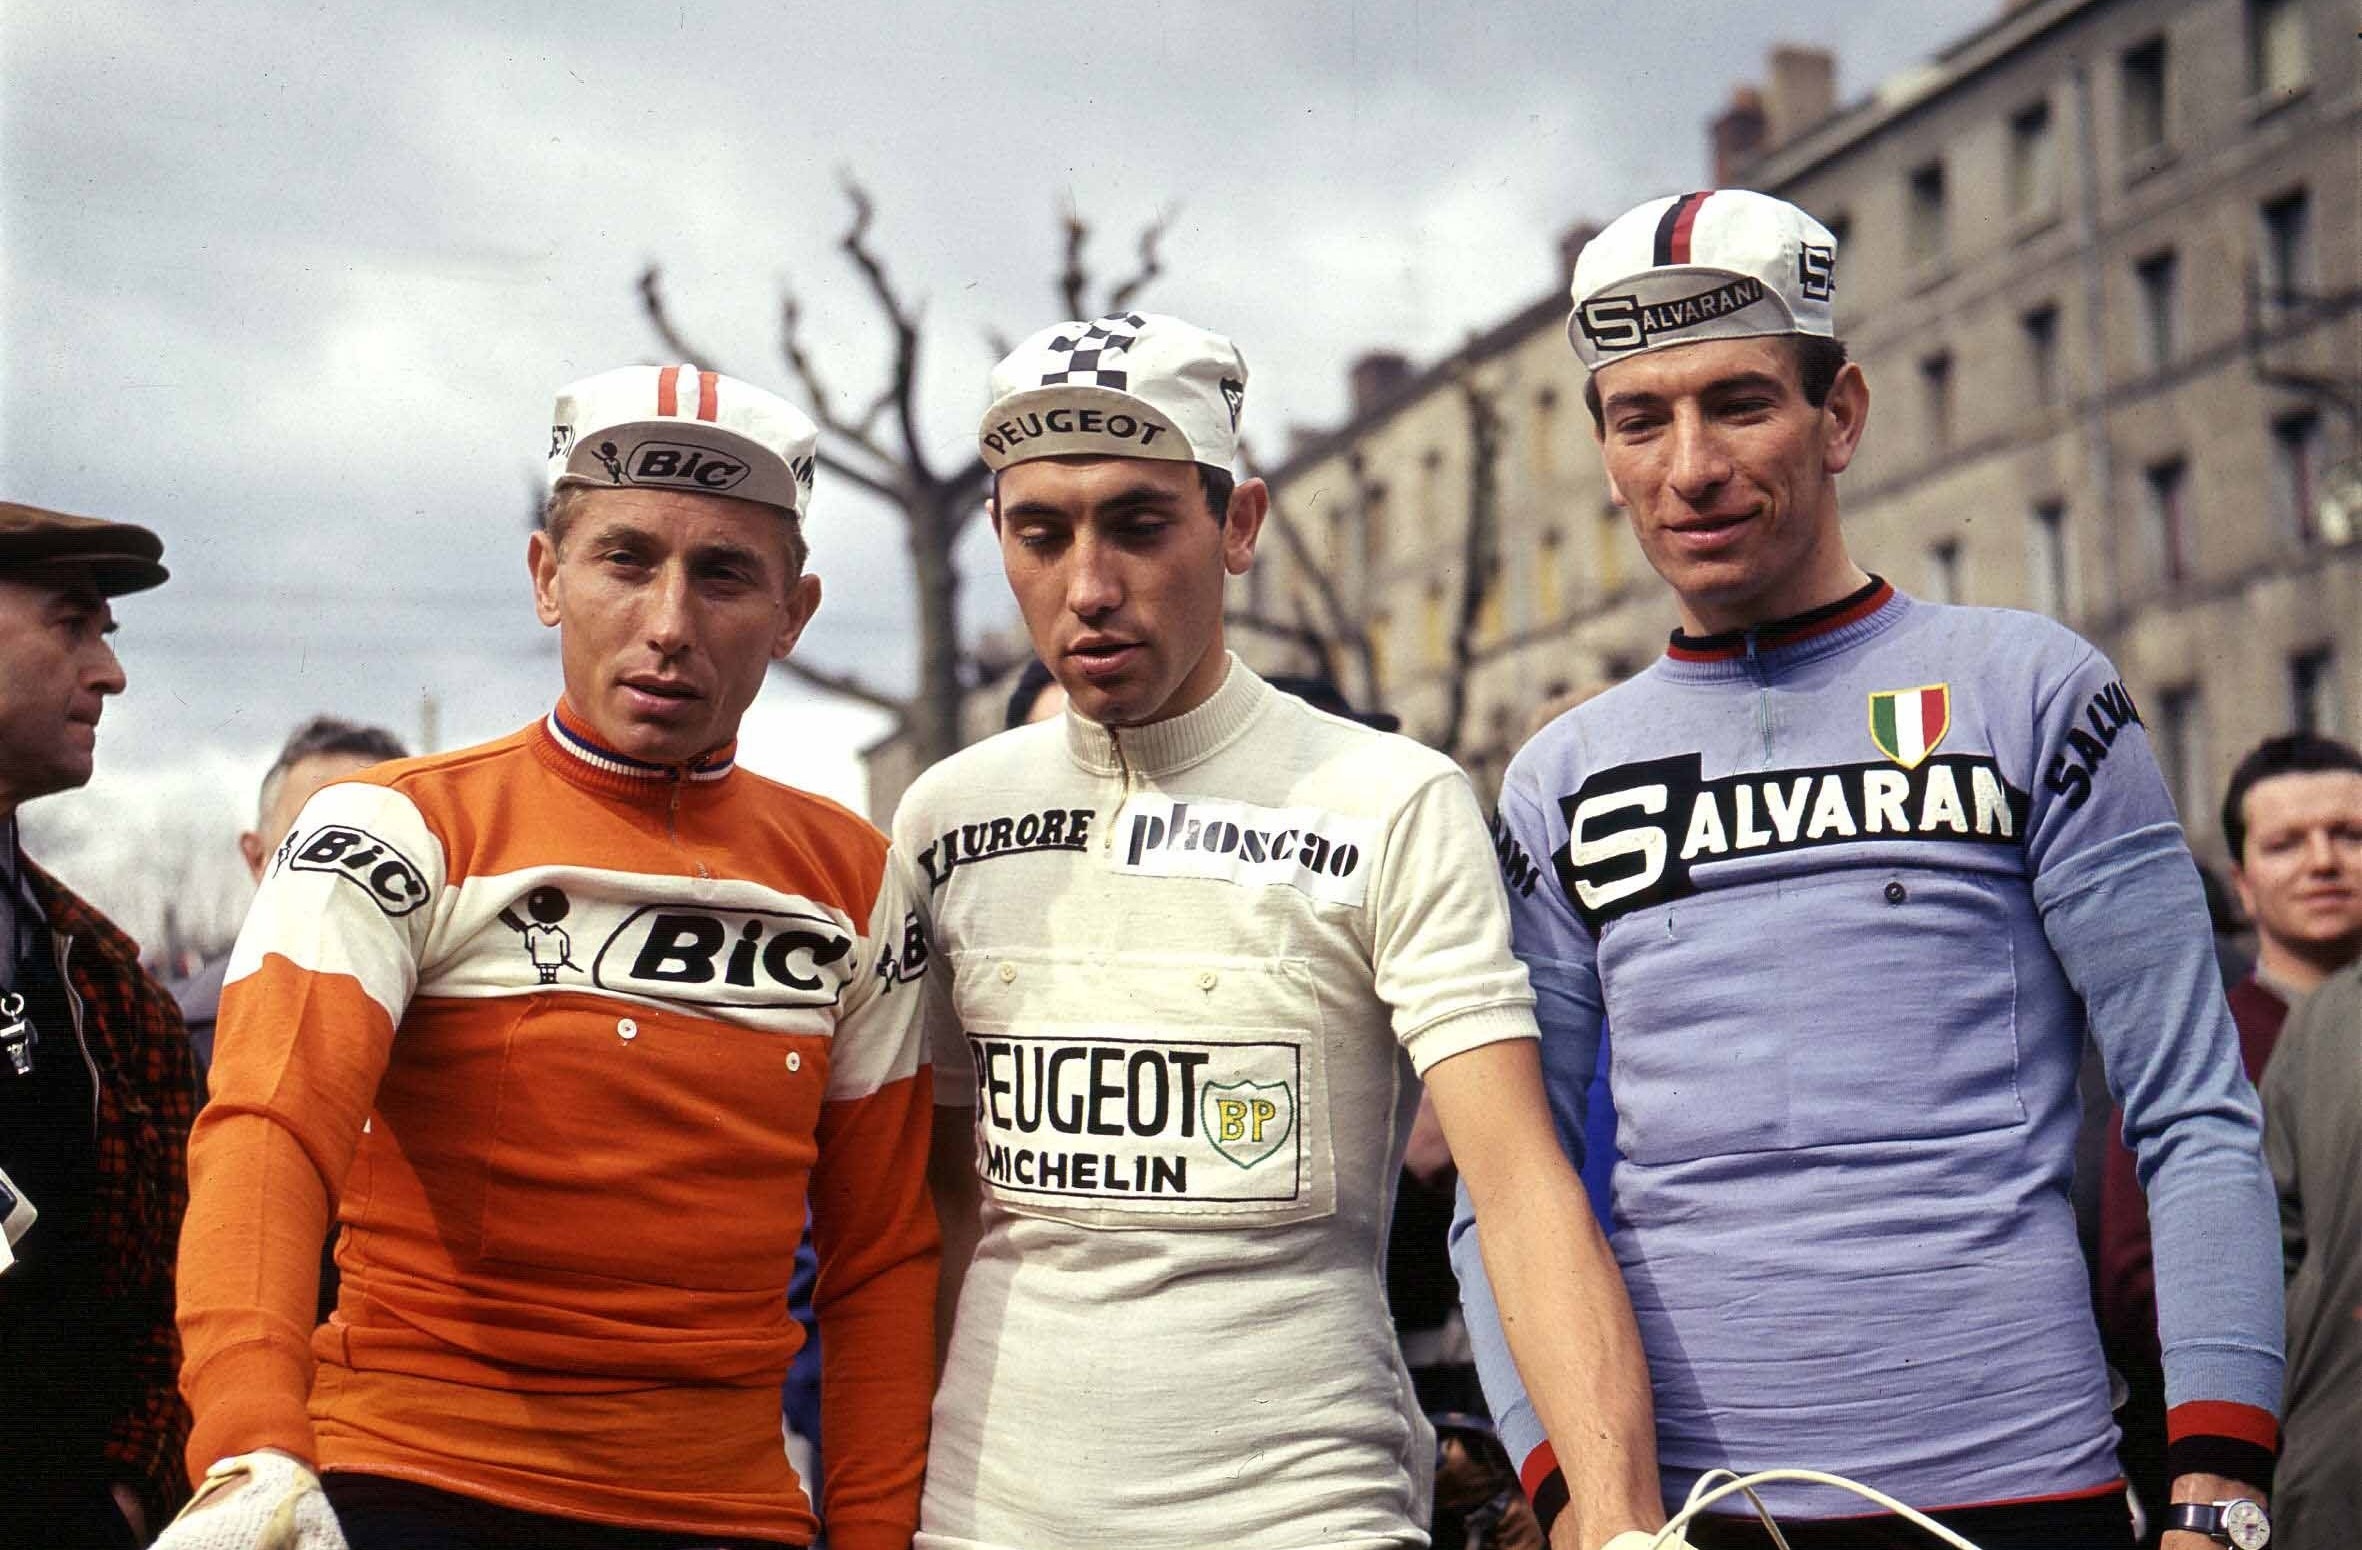 "Poulidor uzun yaşadı, hep kaybetti, daha fazla sevildi ama ben diğer taraftaydım. Anquetil’i destekliyordum."